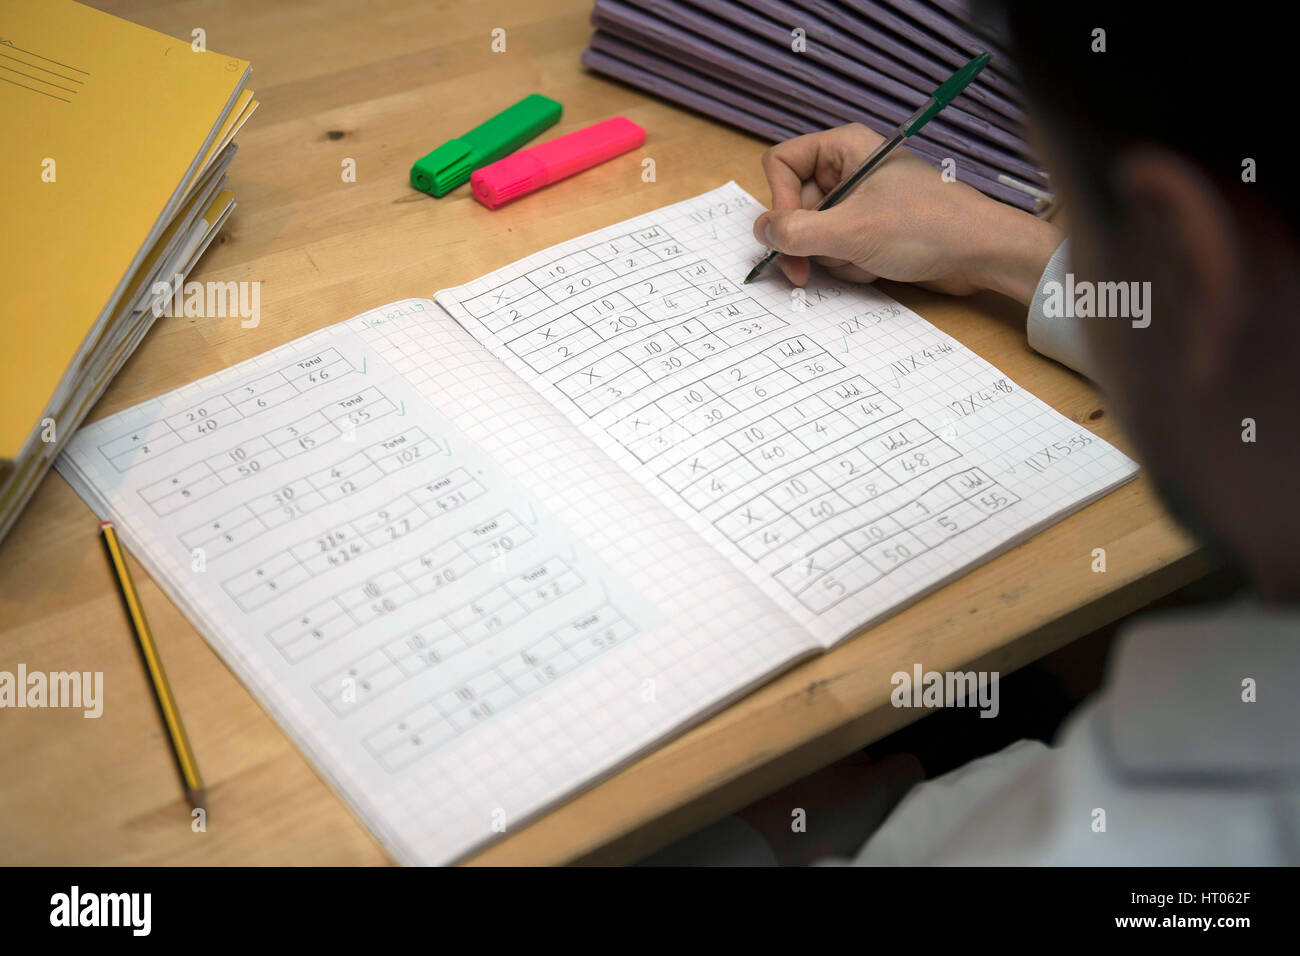 A primary school teacher marking a pupil's maths homework. Stock Photo